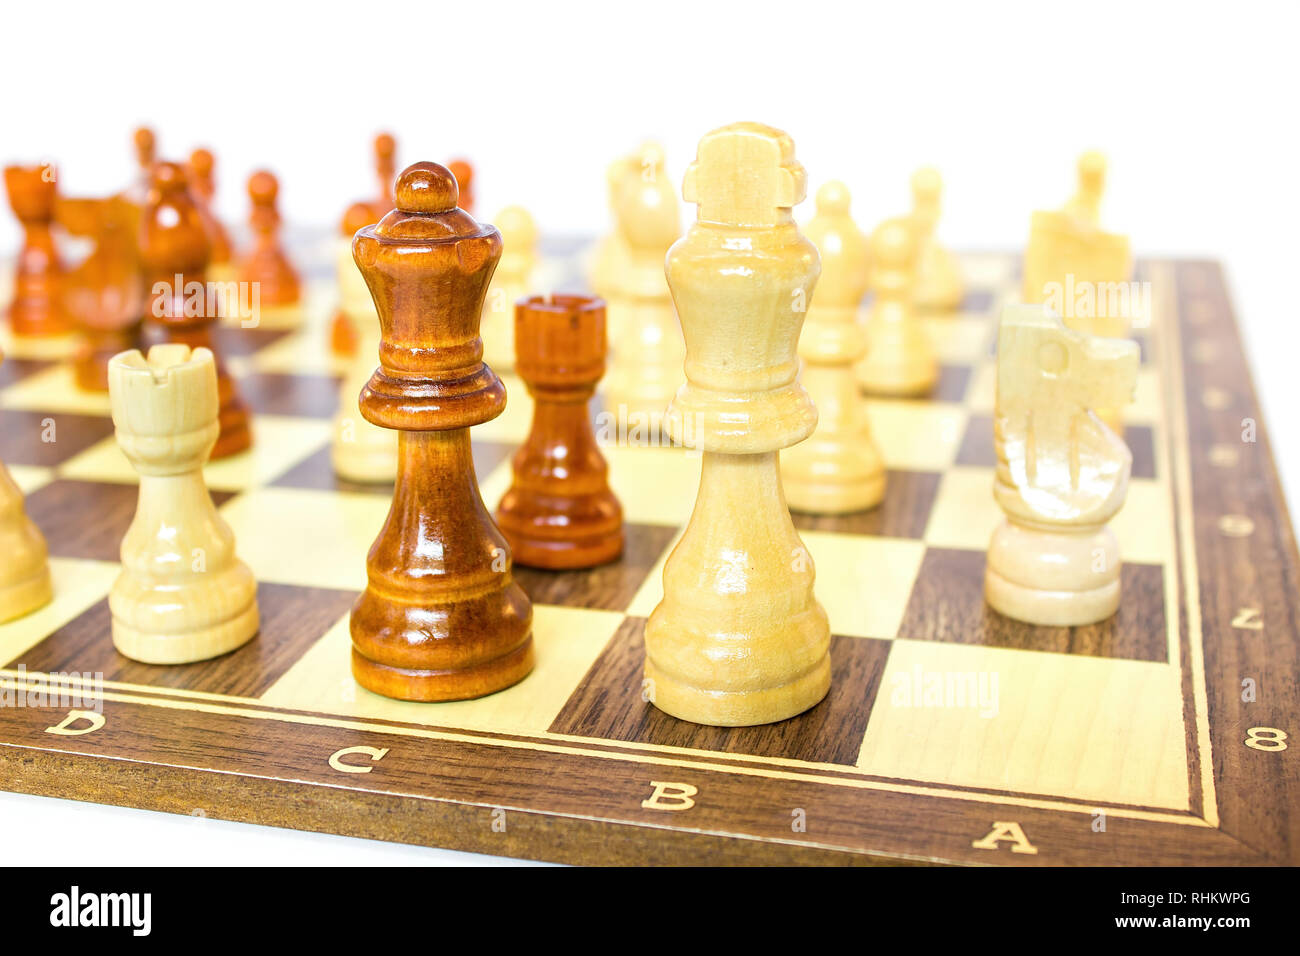 Pezzi di scacchi permanente sulla scacchiera isolati su sfondo bianco Foto Stock